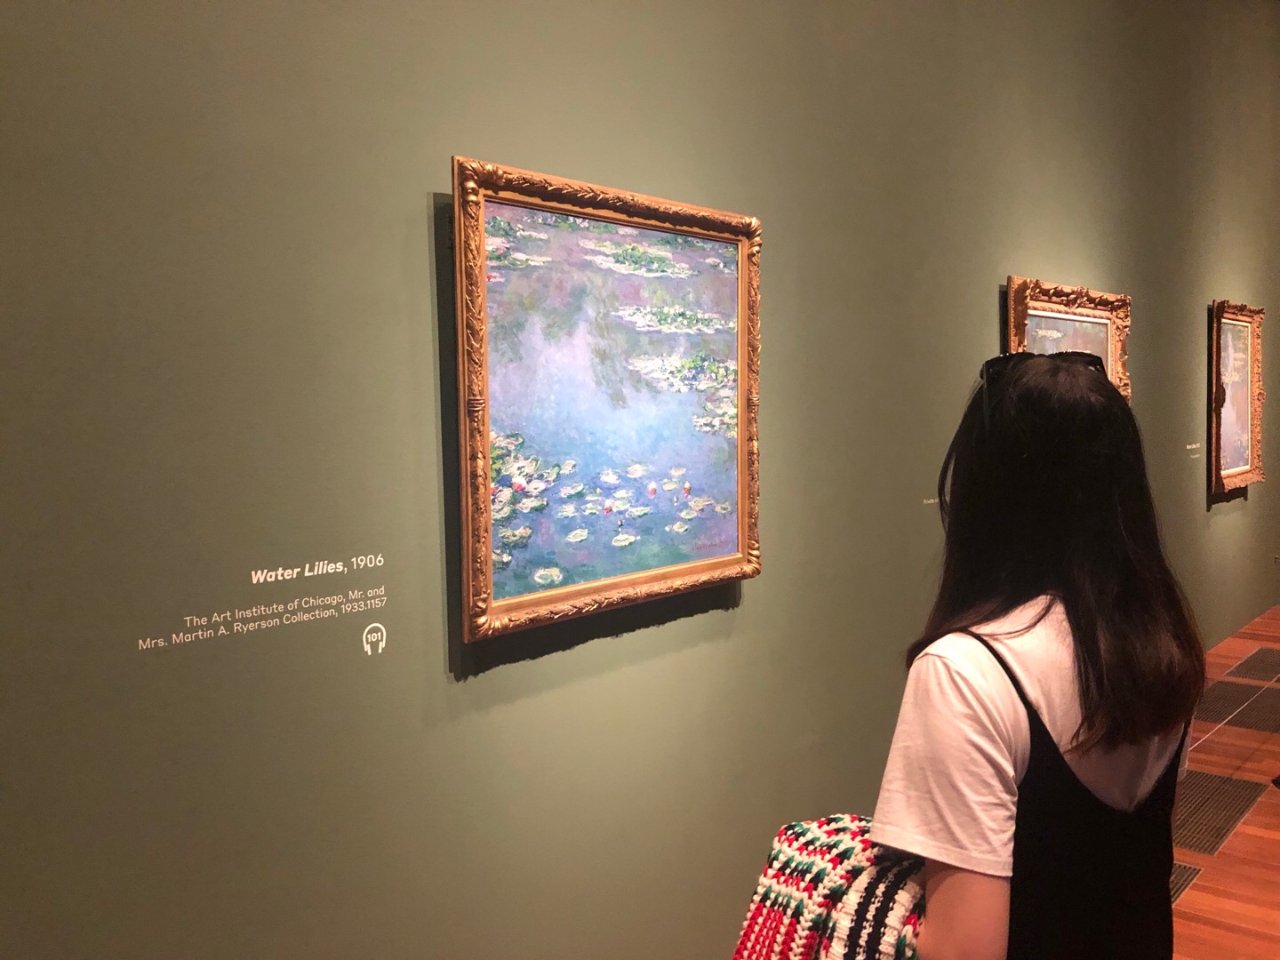 de young museum,Monet 莫奈,Water lilies